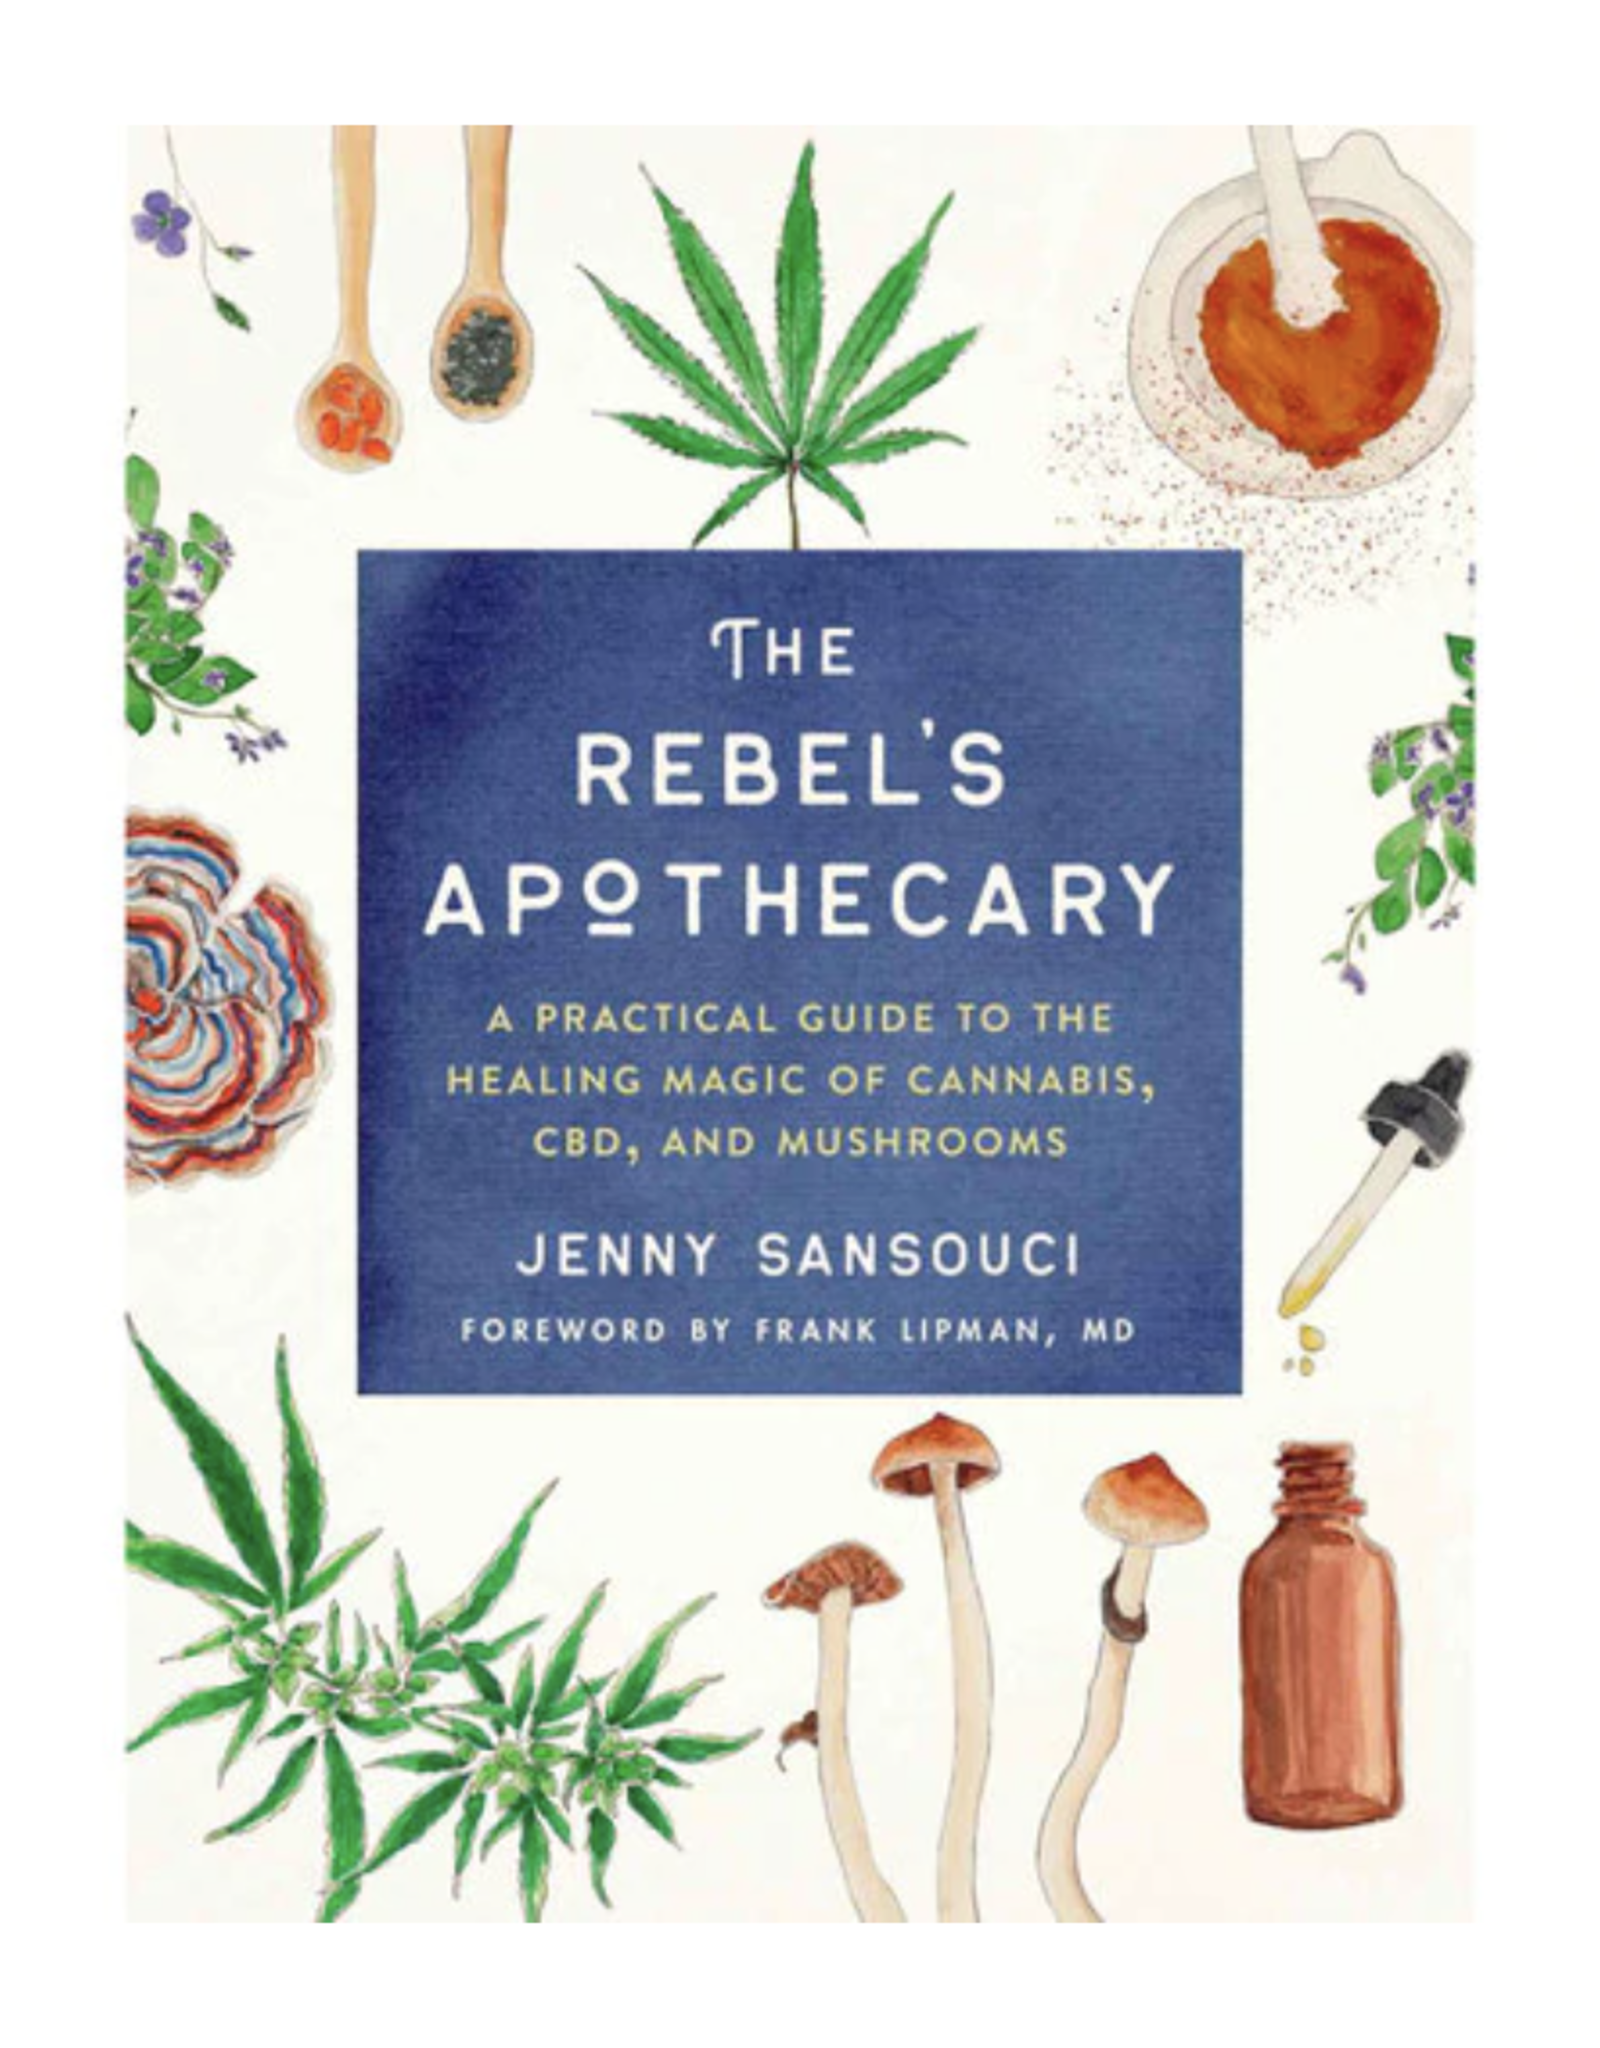 Rebel's Apothecary by Jenny Sansouci